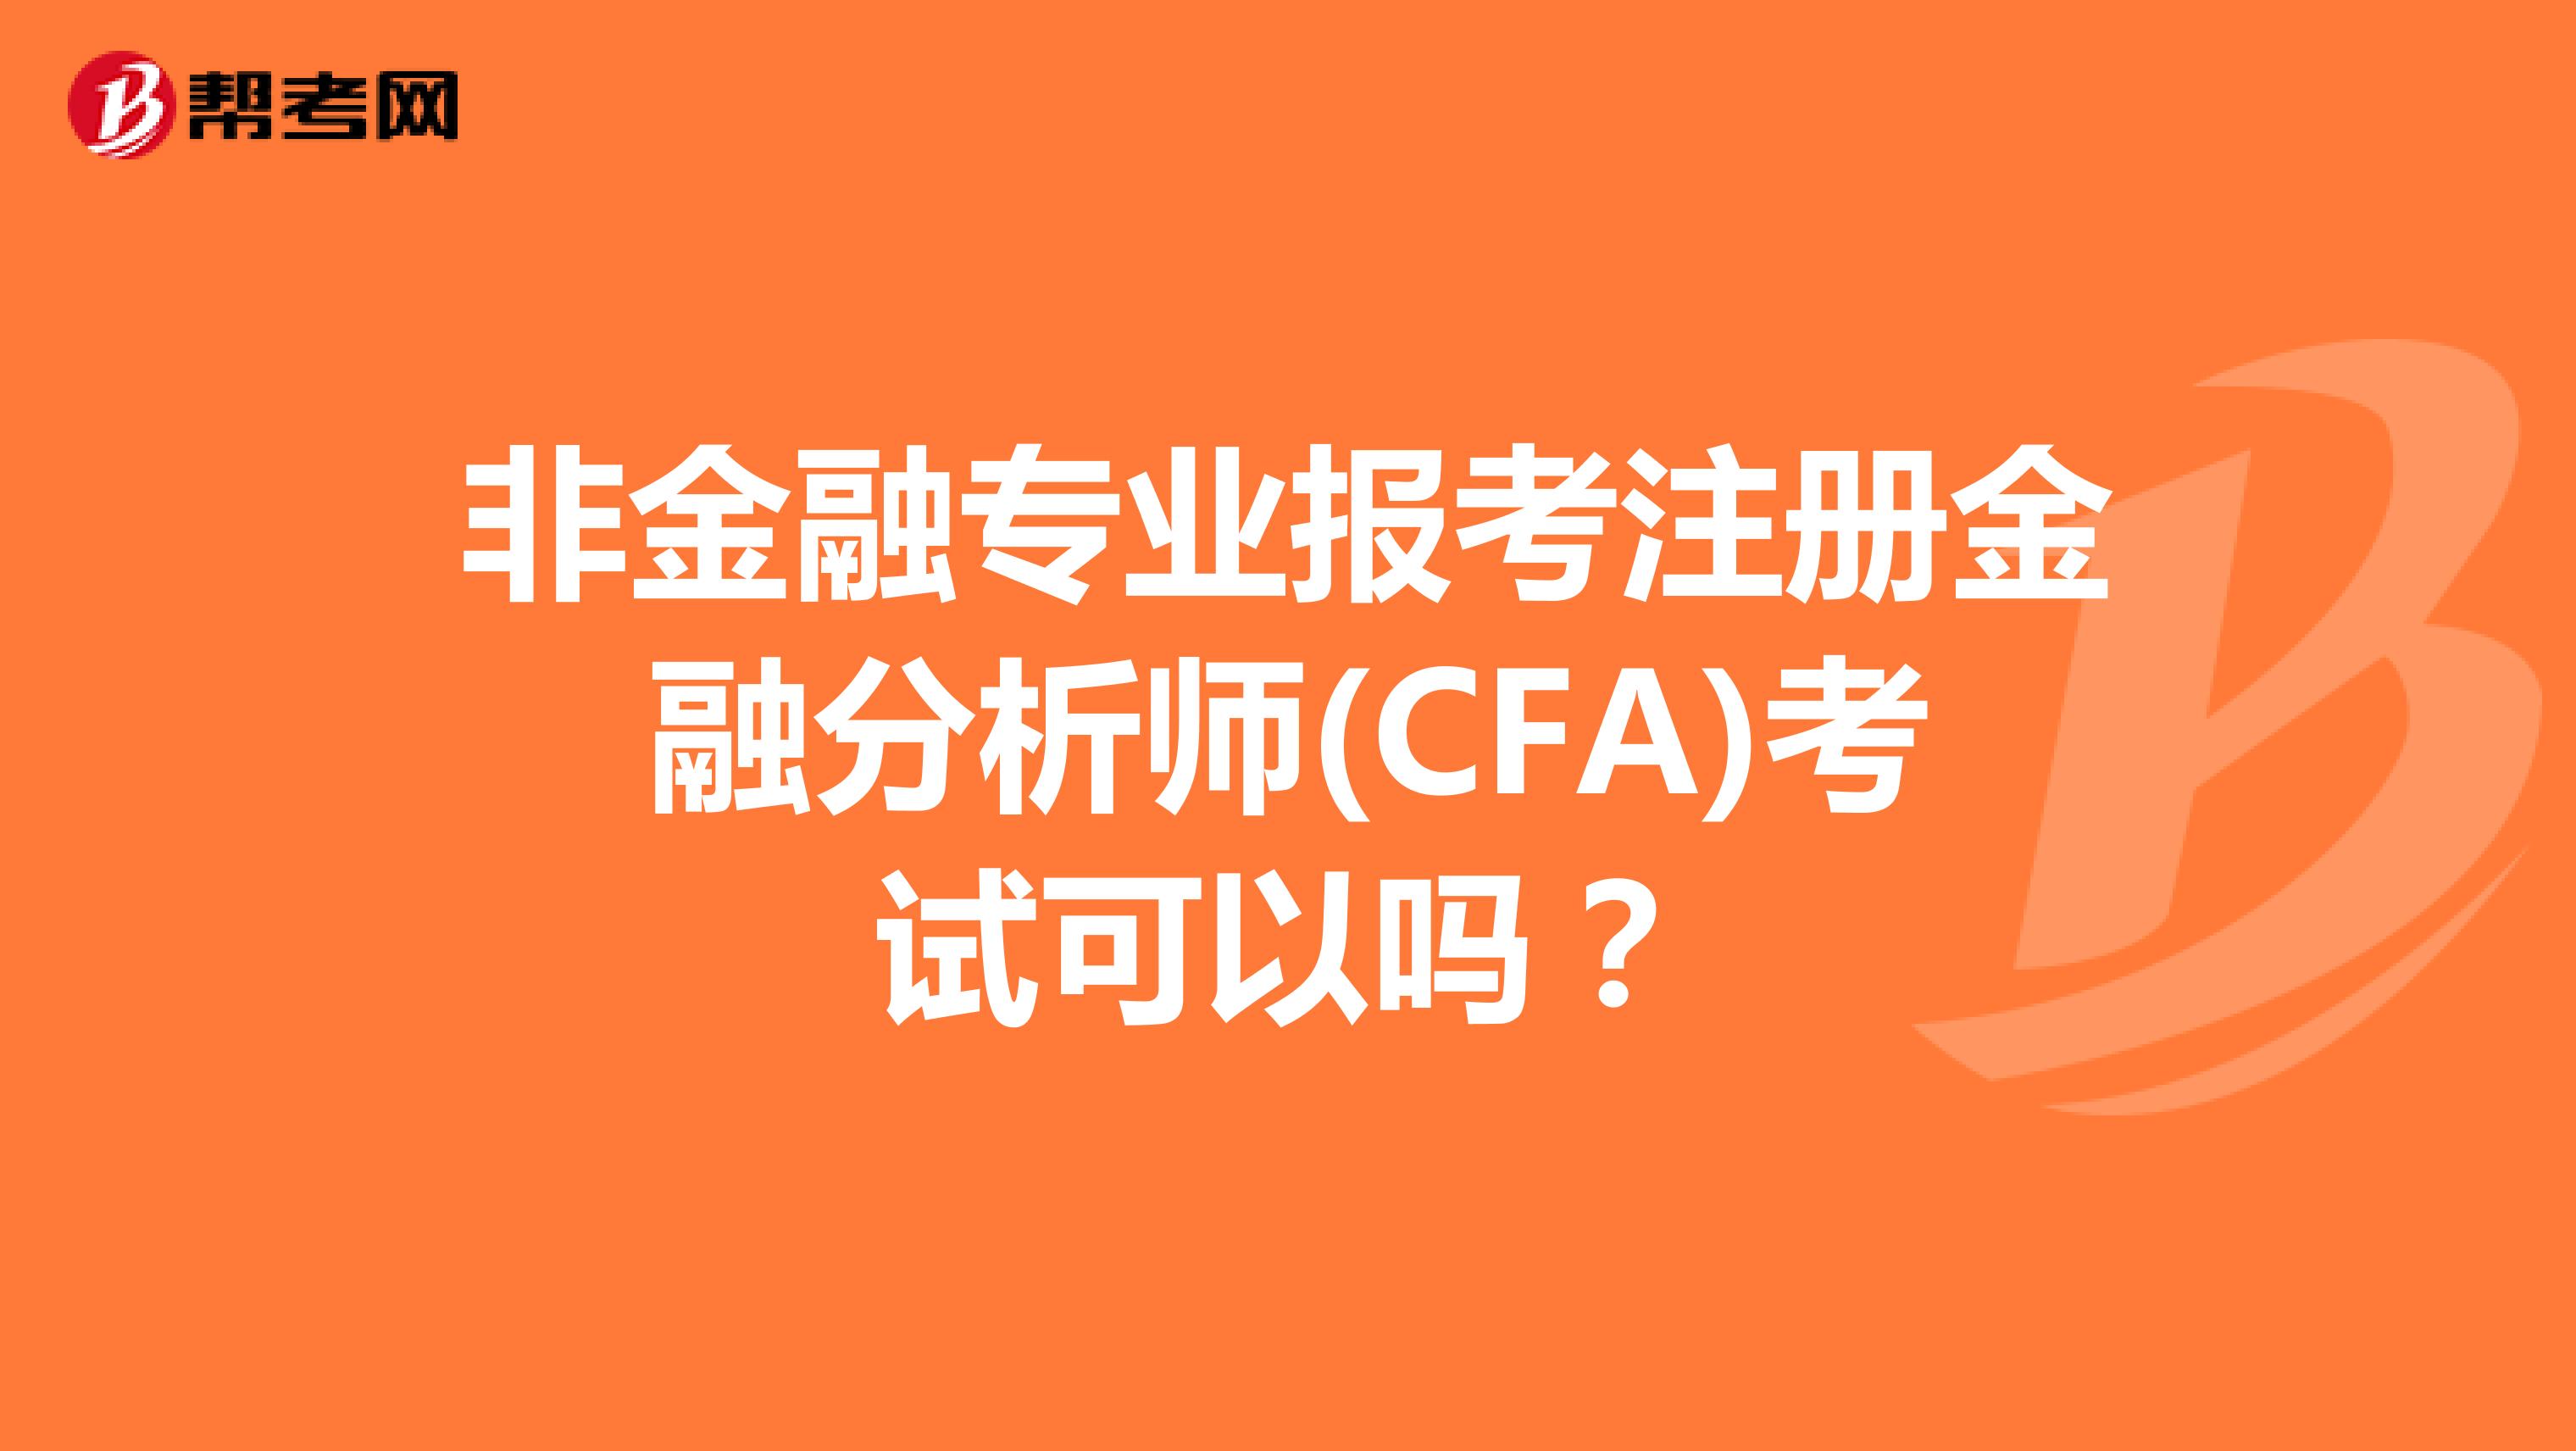 非金融专业报考注册金融分析师(CFA)考试可以吗？